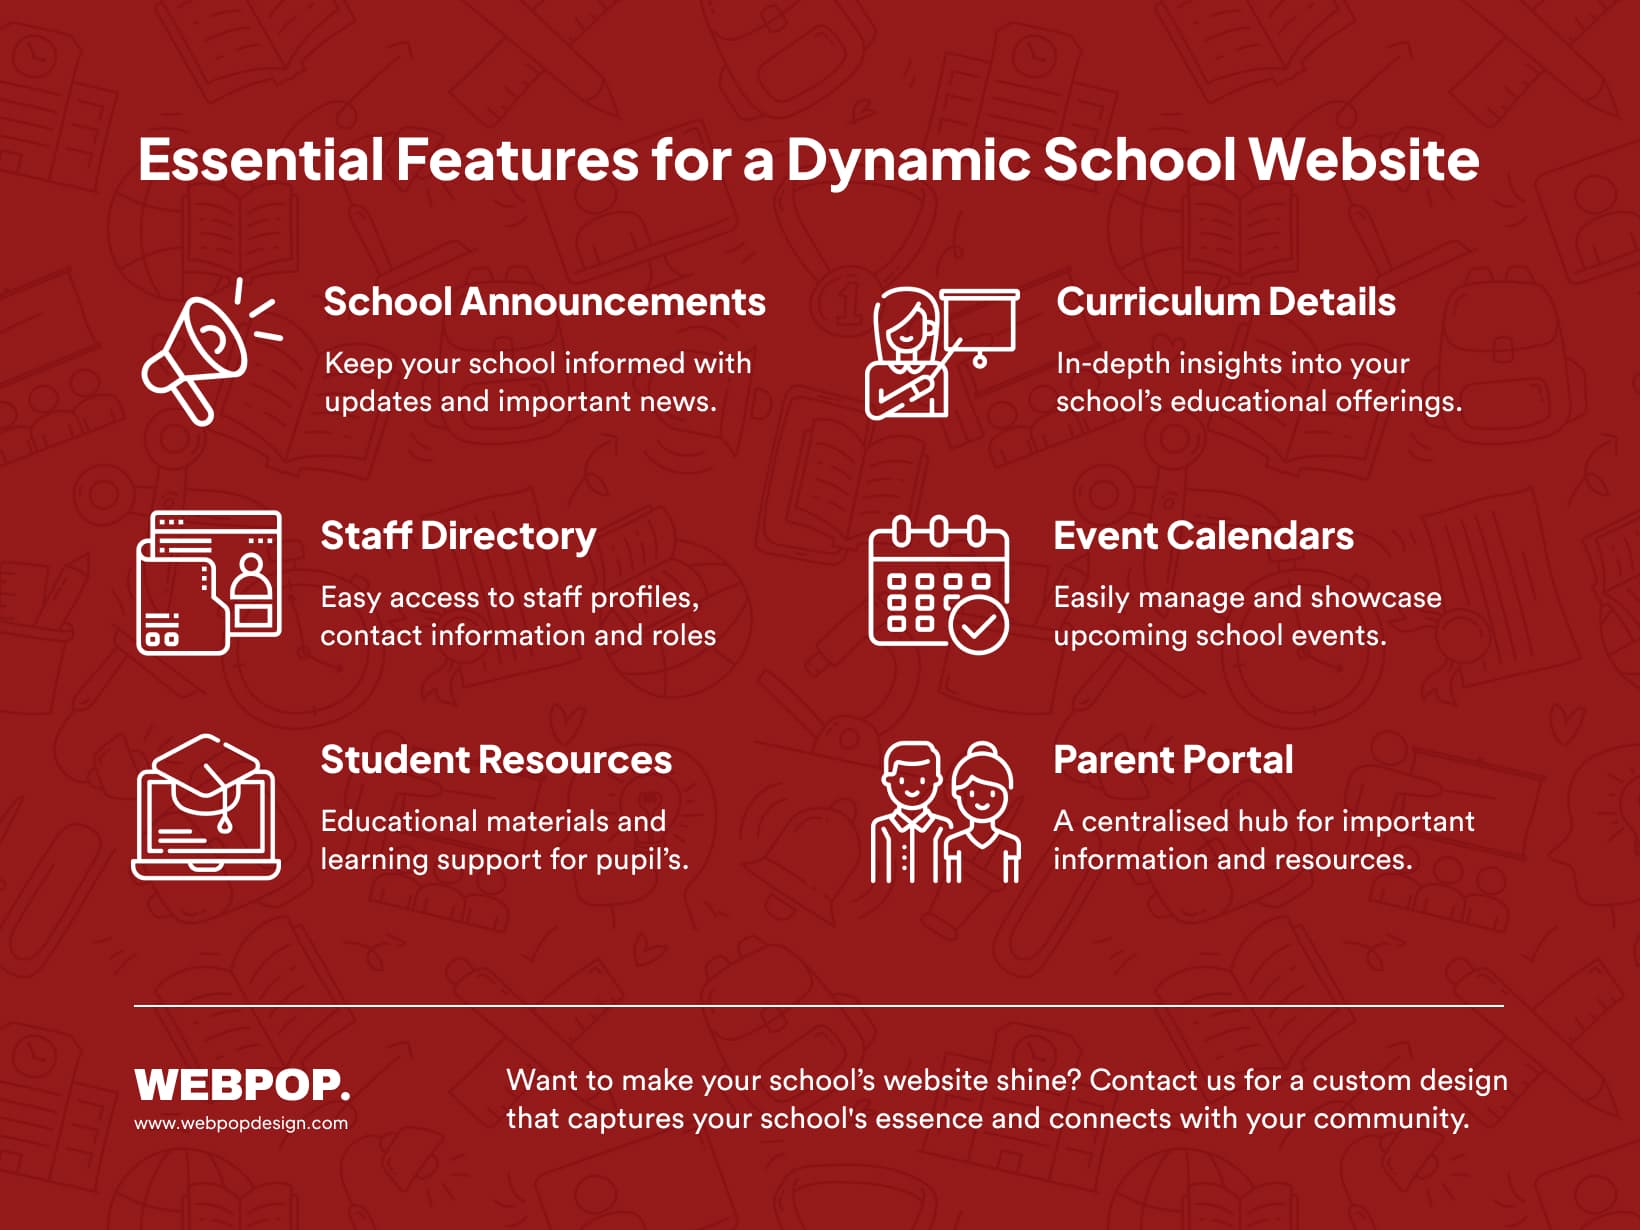 Primary School Website Design